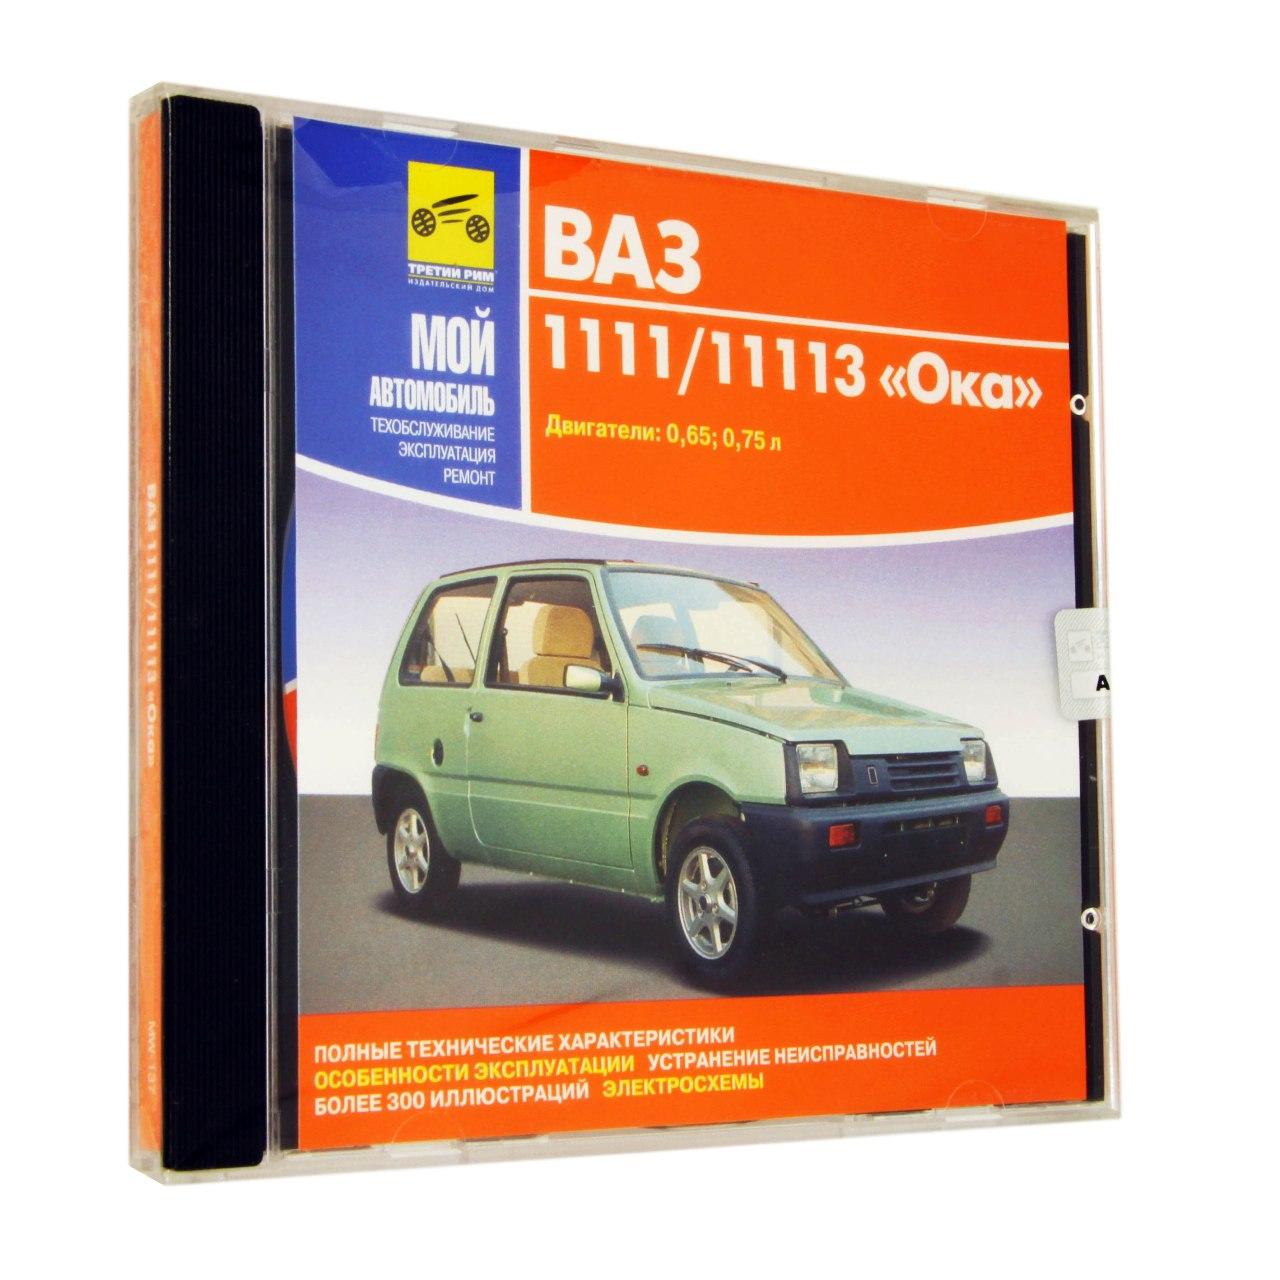 Компьютерный компакт-диск ВАЗ - 1111. Мой автомобиль. (ПК), фирма "Медиа Ворлд", 1CD